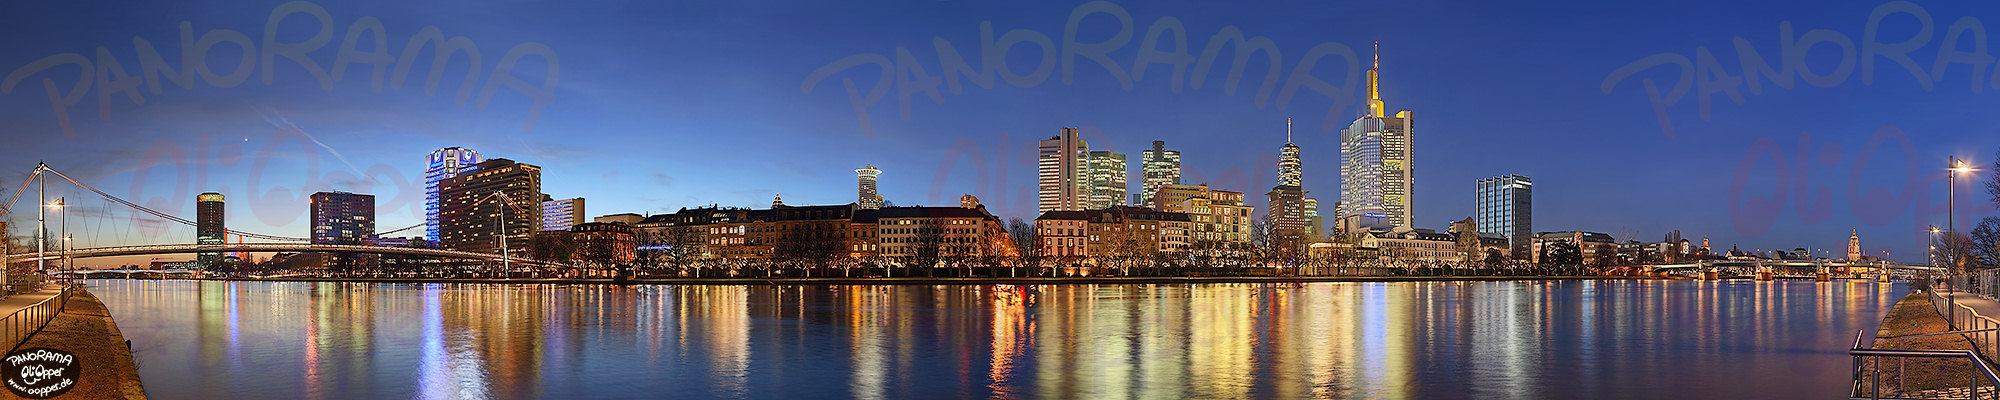 Panorama Bilder Frankfurt - Mainufer zur blauen Stunde - p151 - (c) by Oliver Opper